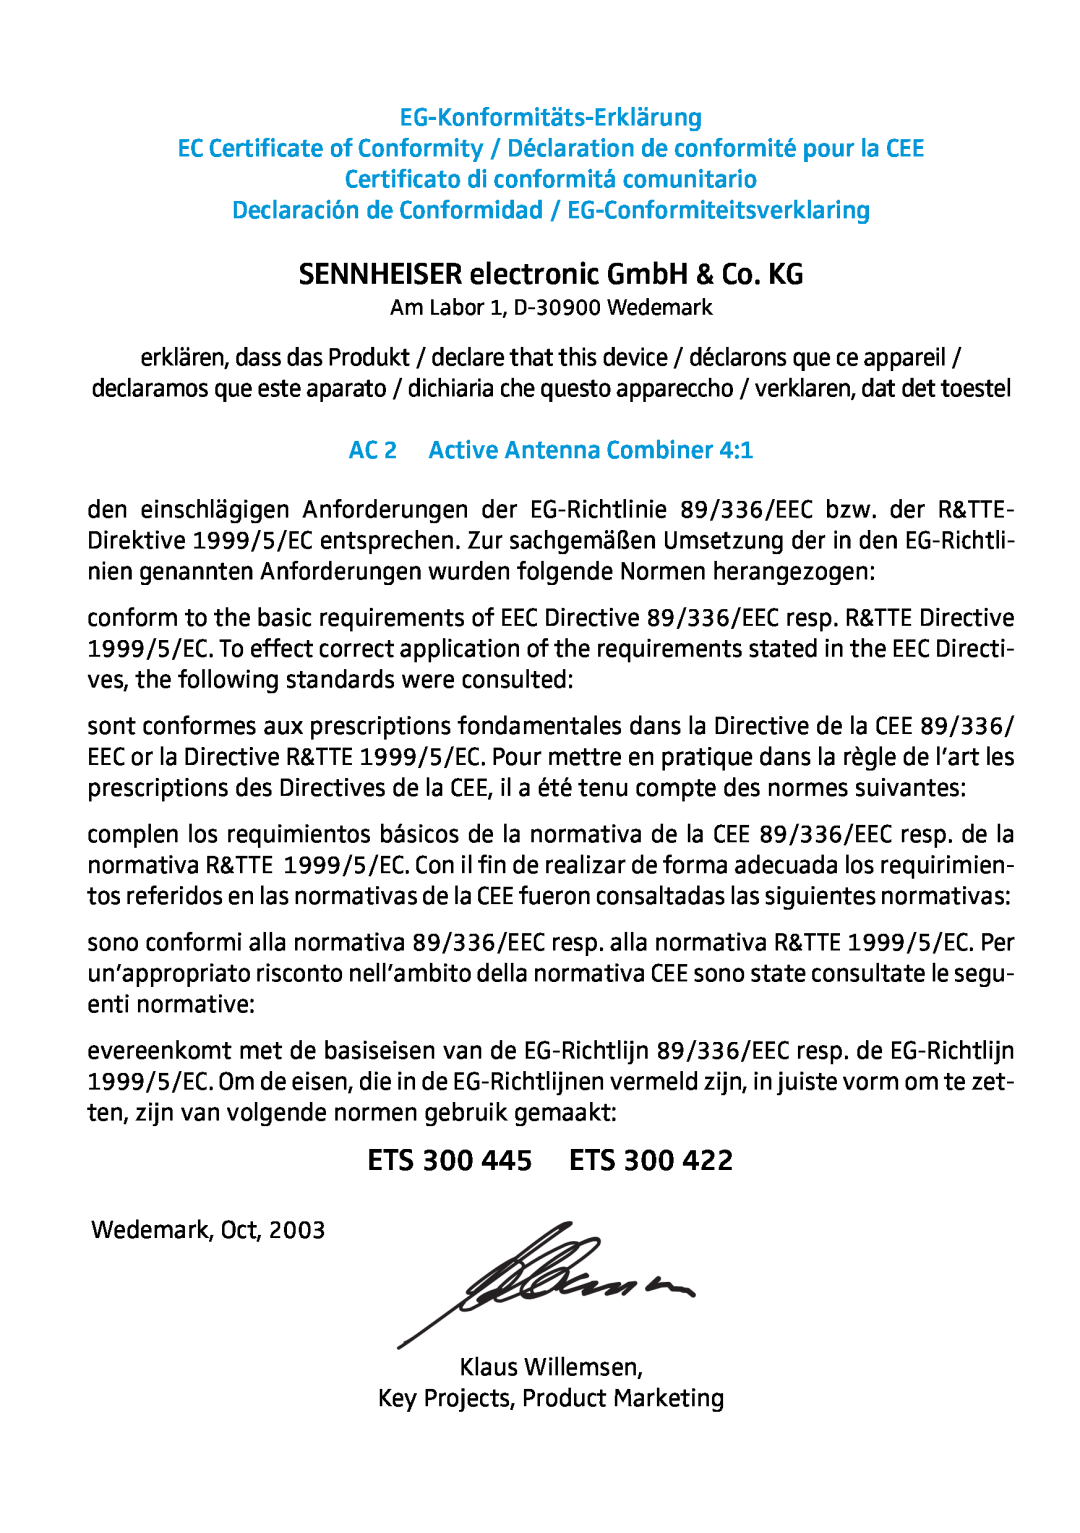 Sennheiser AC 2 manual SENNHEISER electronic GmbH & Co. KG, ETS 300 445 ETS, EG-Konformitäts-Erklärung 